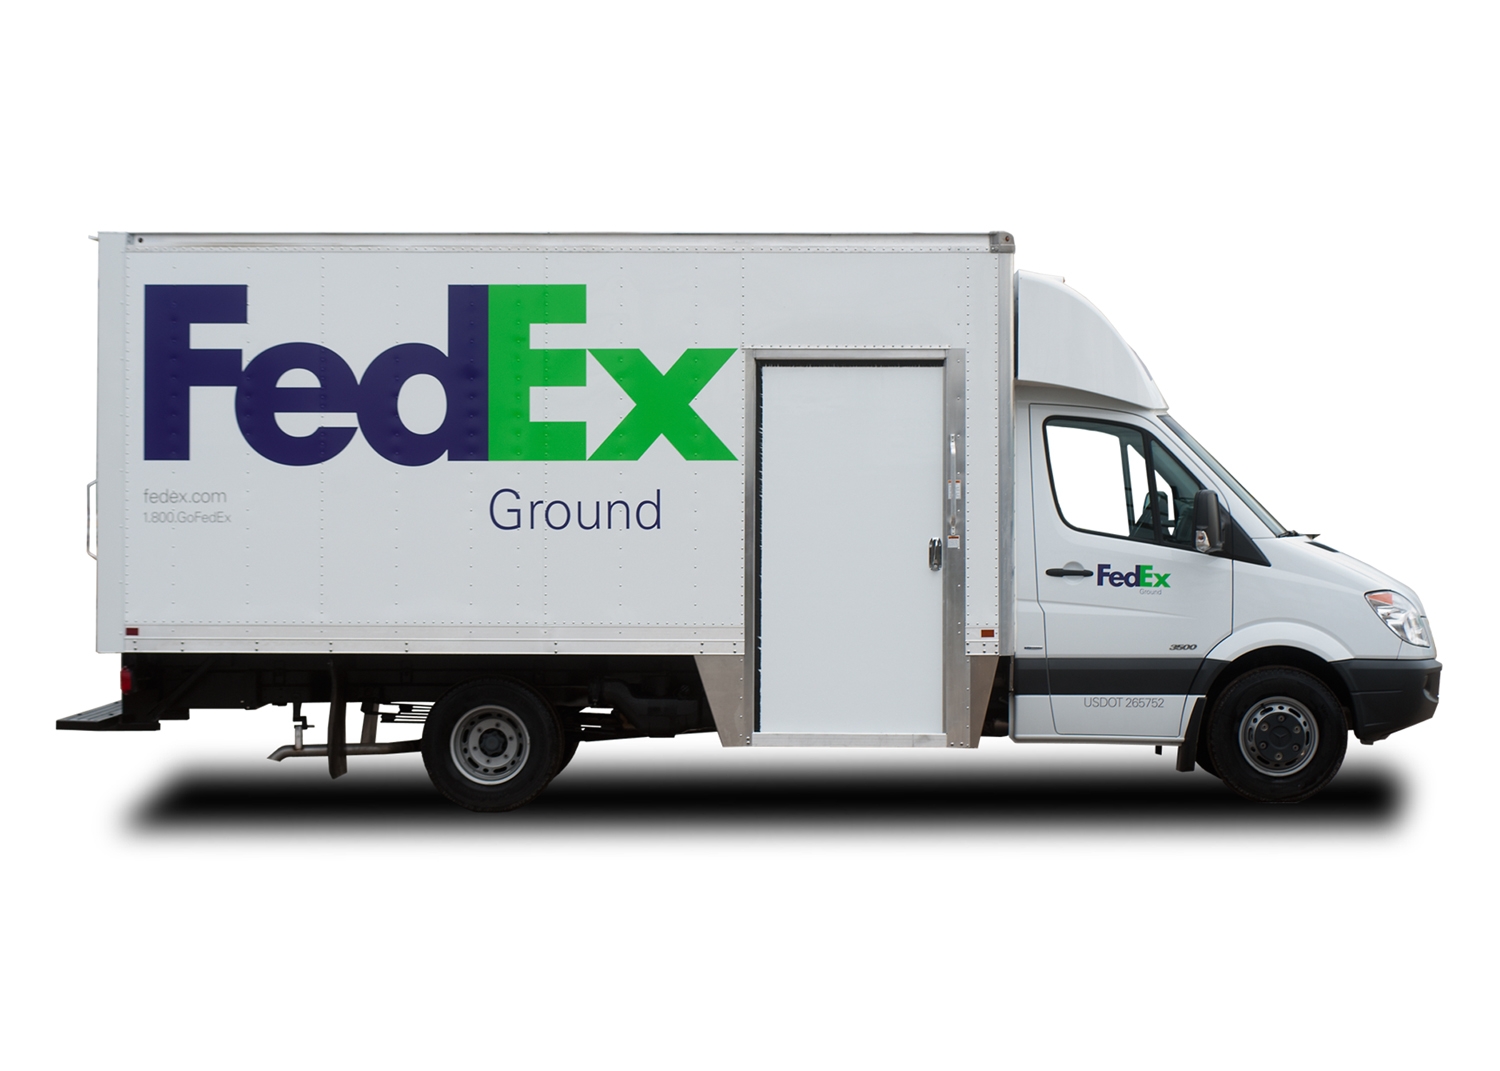 Fedex Ground Unloading